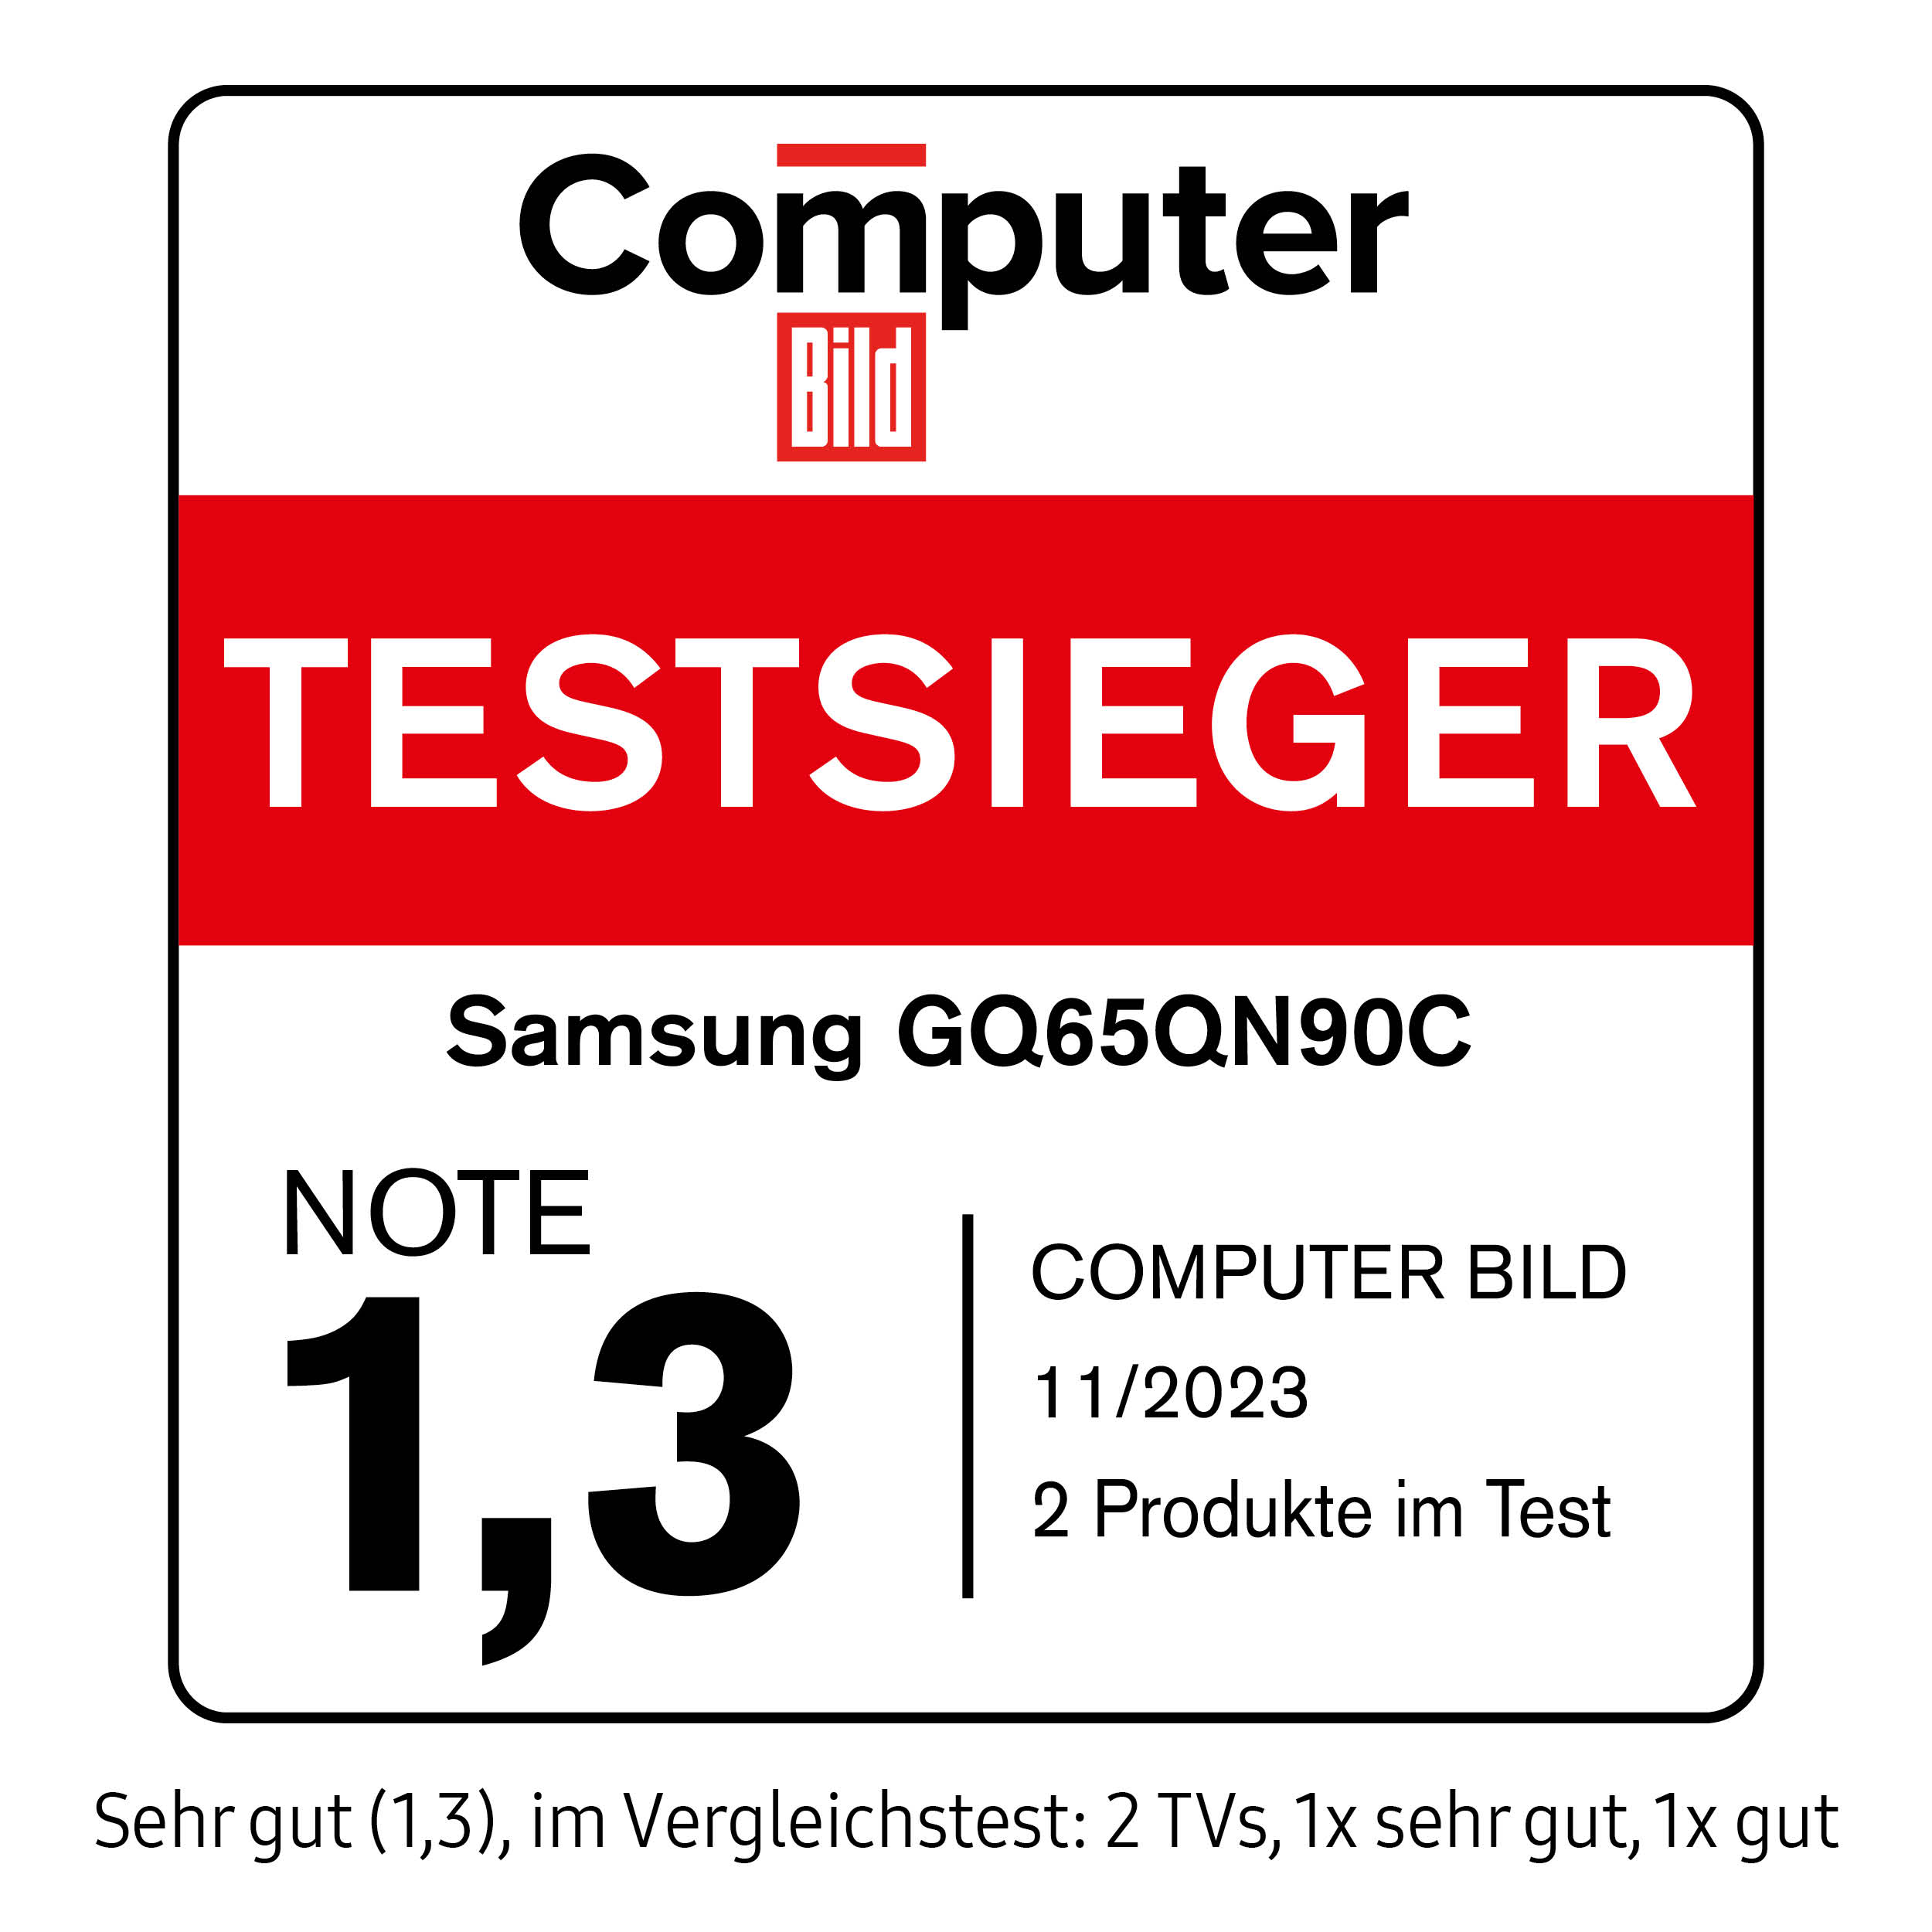 118570_Computer_Bild_Testsieger_Samsung_GQ65QN90C_11_2023_mitAngaben